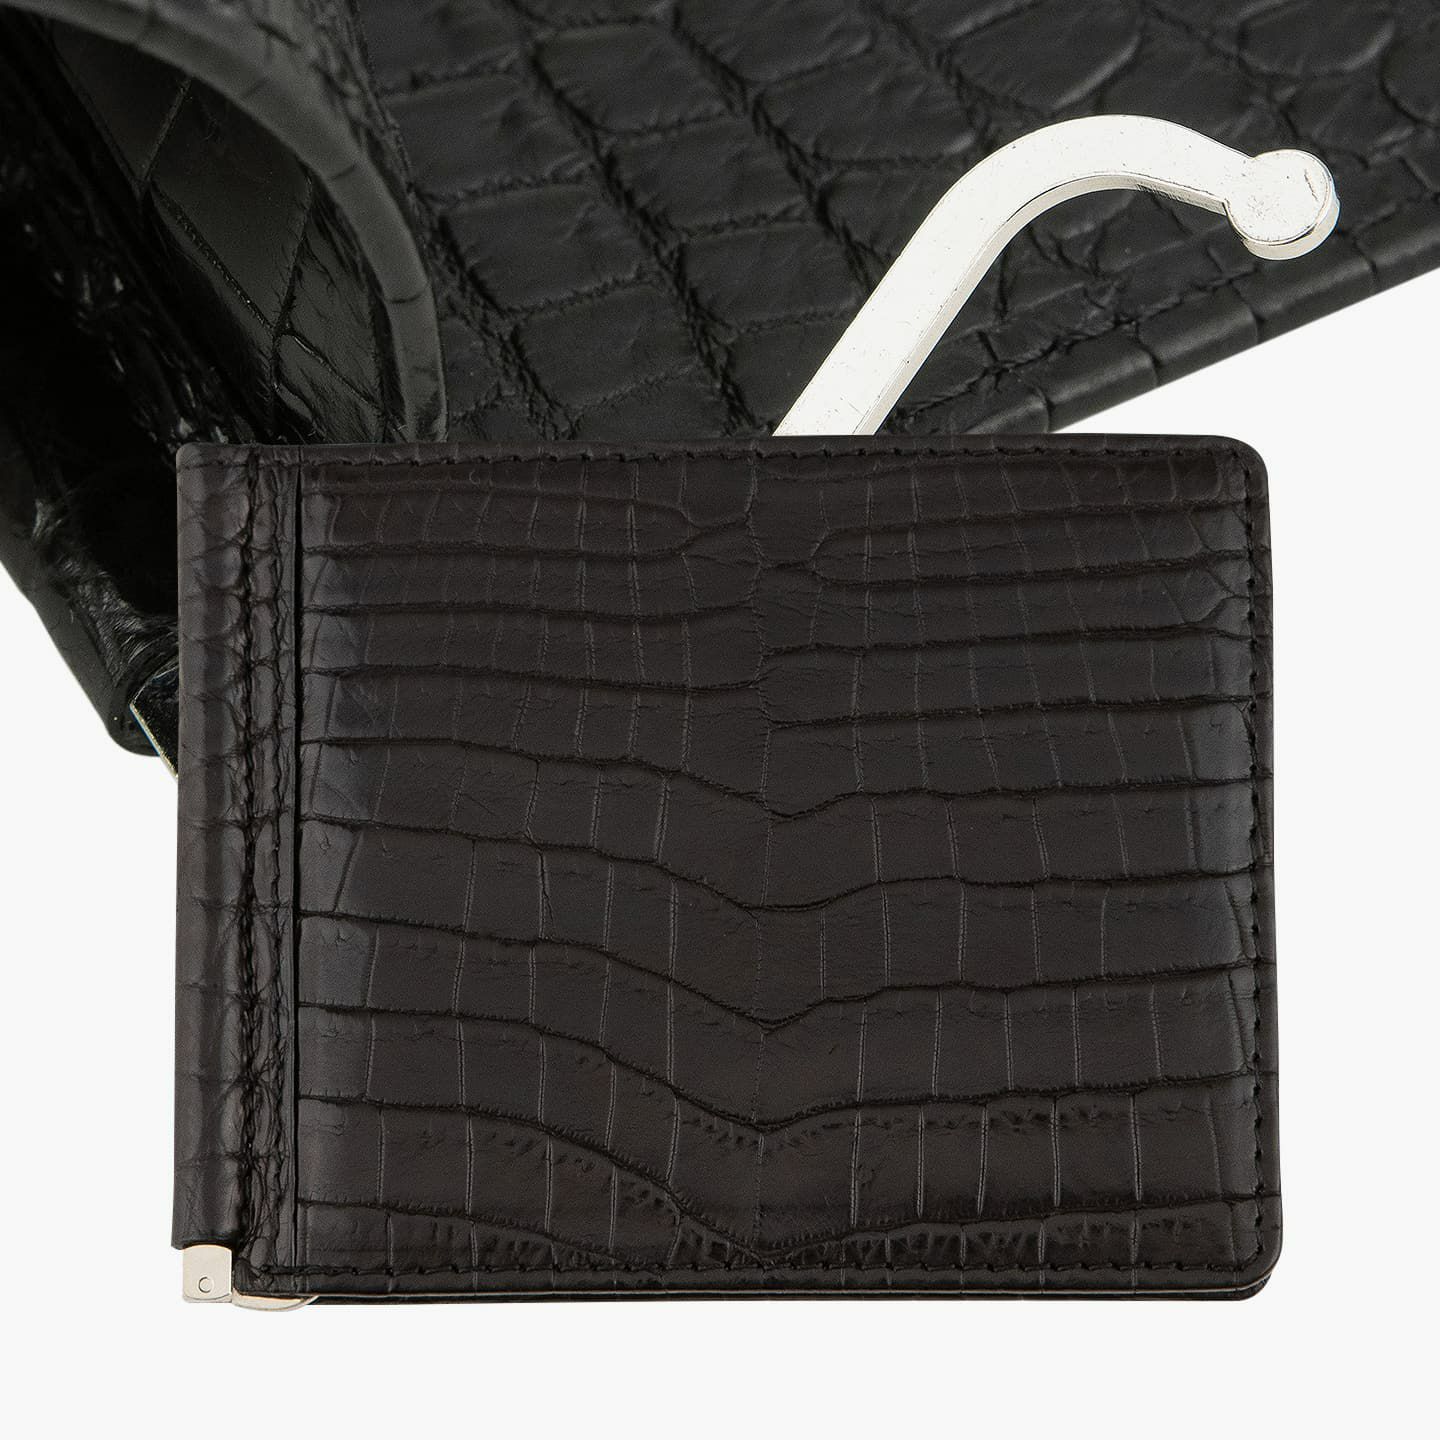 ナイルクロコダイル マネークリップ | 大人のバッグ・財布 